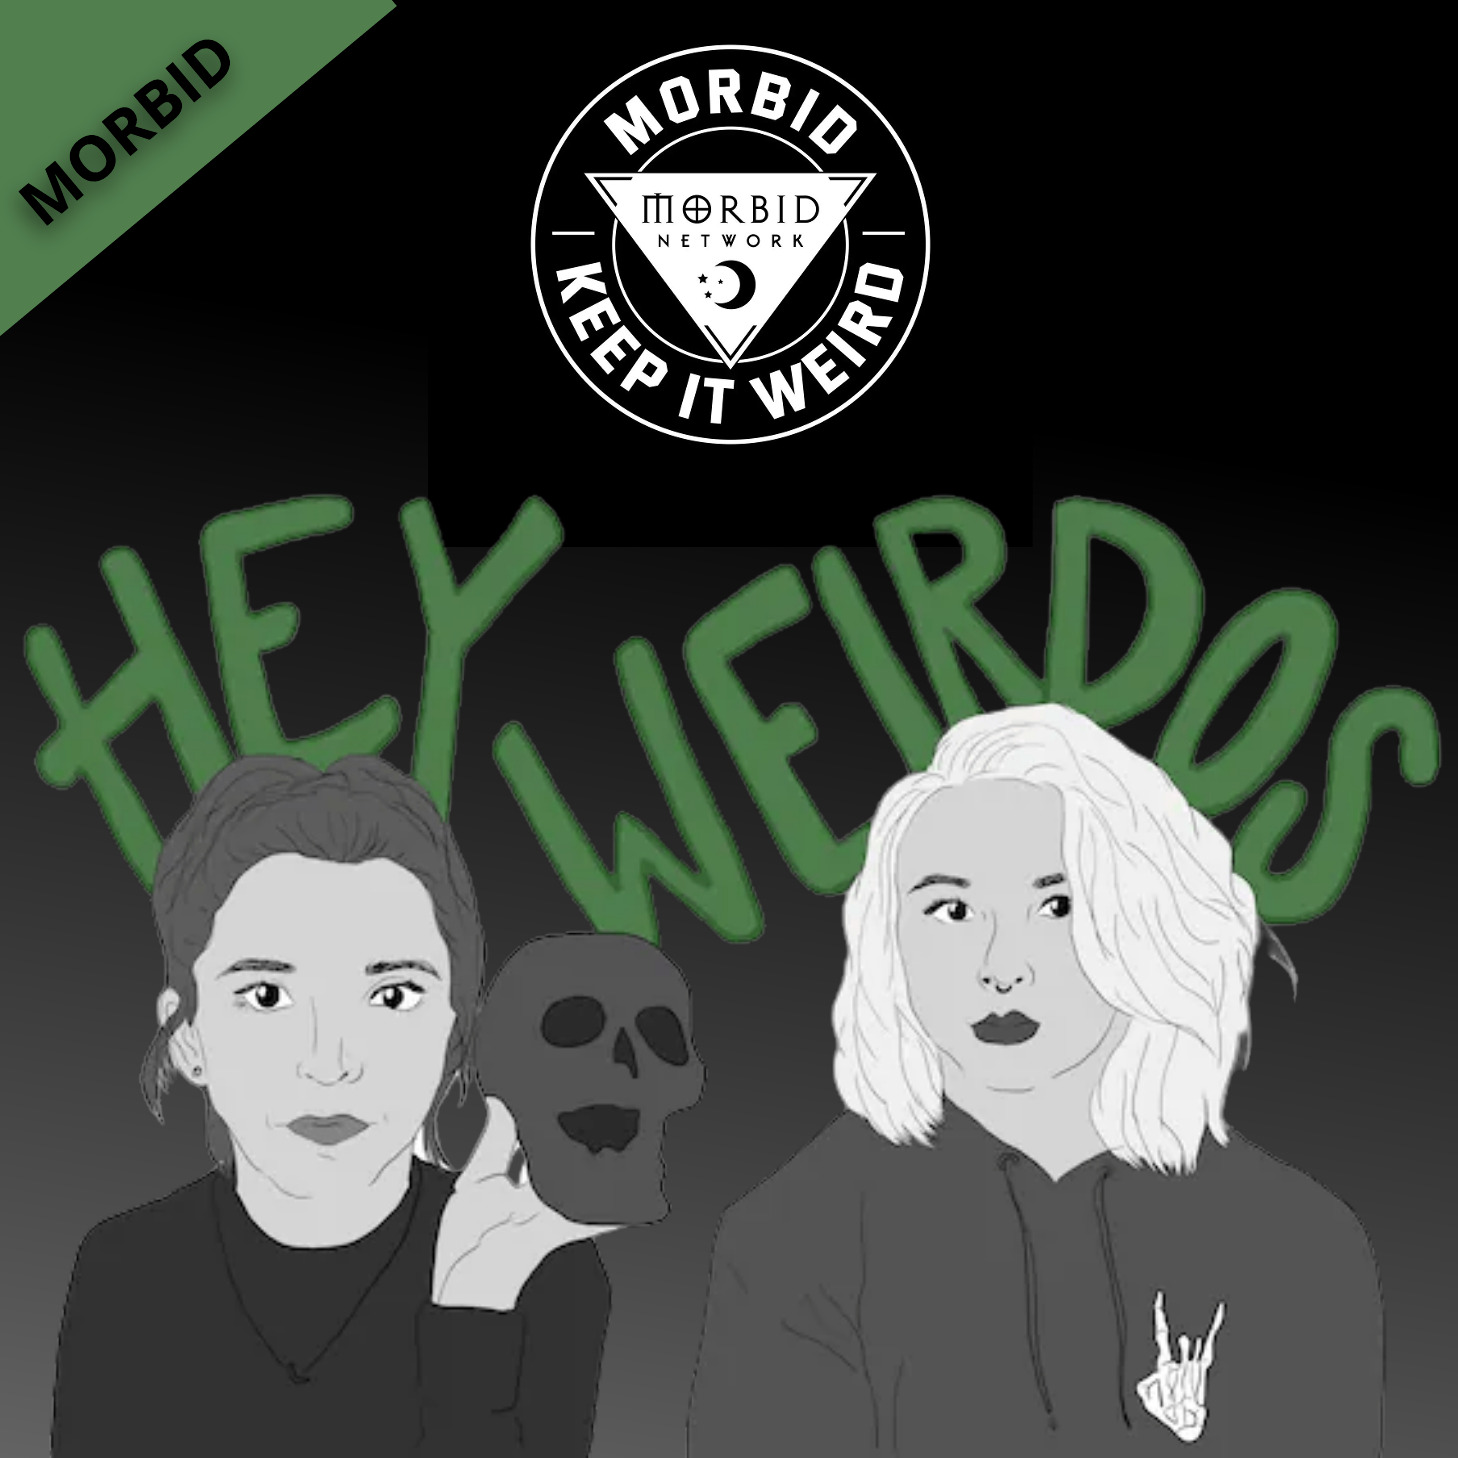 Morbid Podcast – Listen Here & Full Review